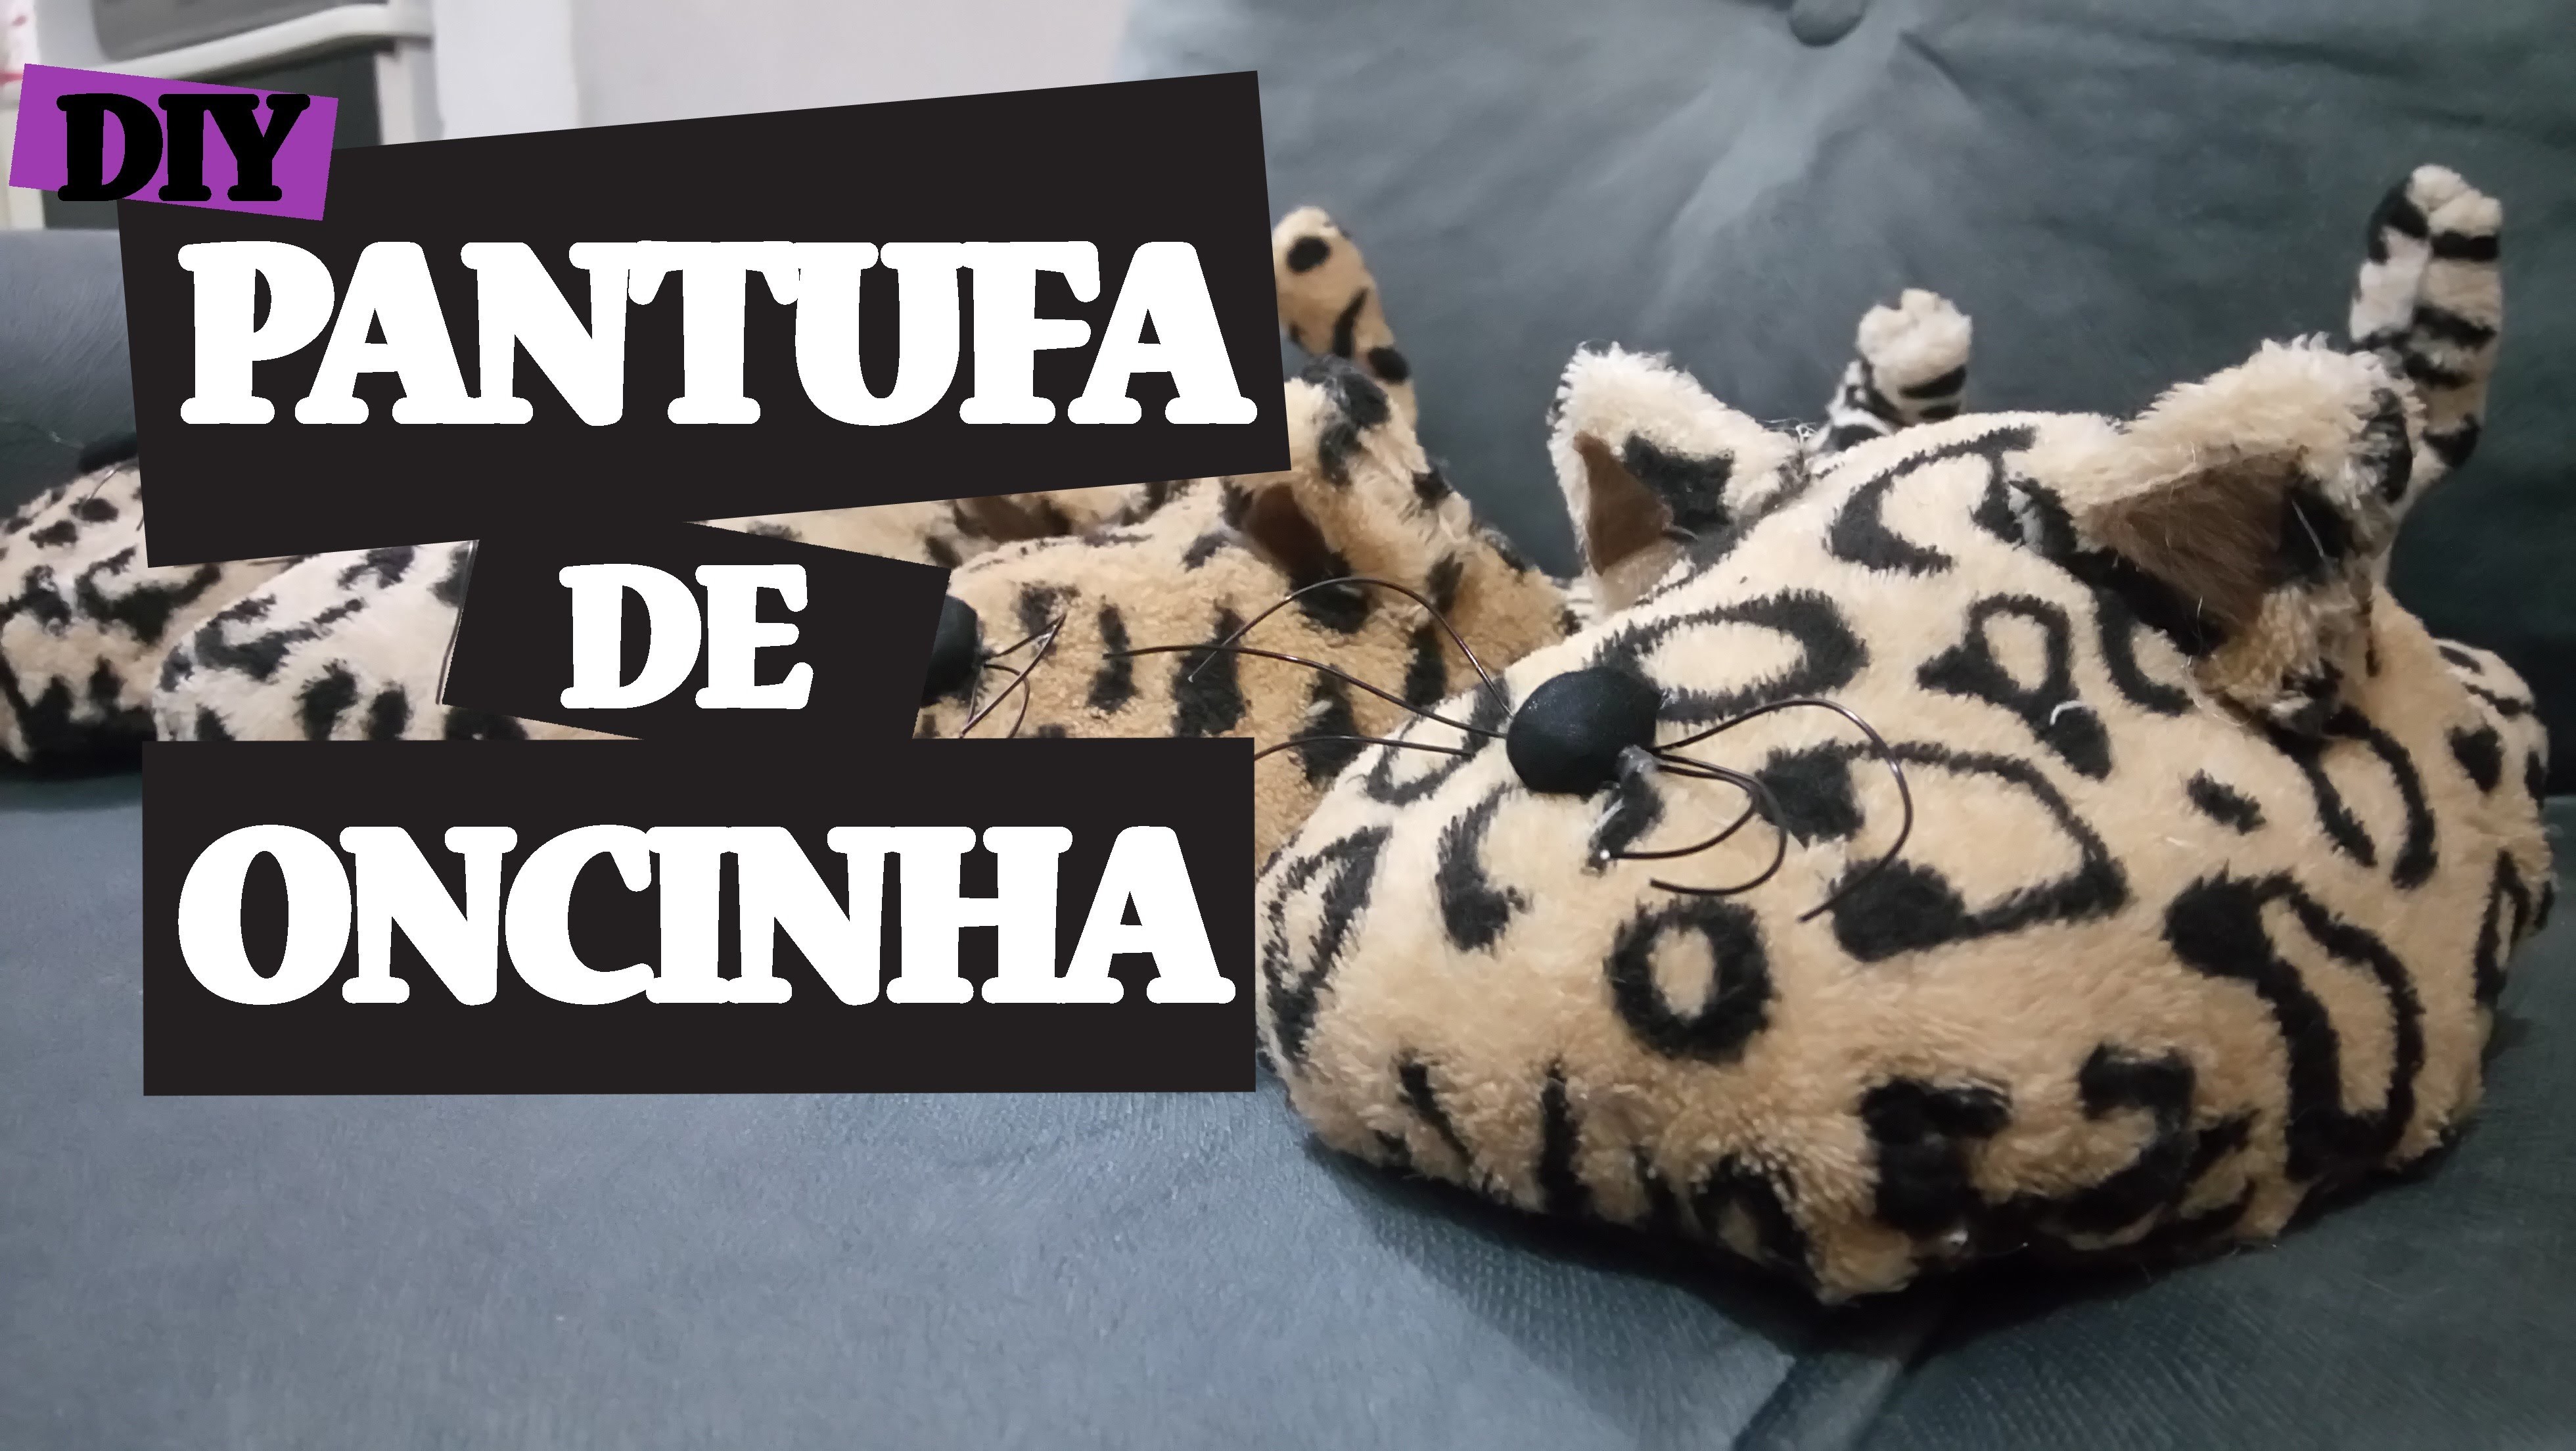 DIY Pantufa de Oncinha